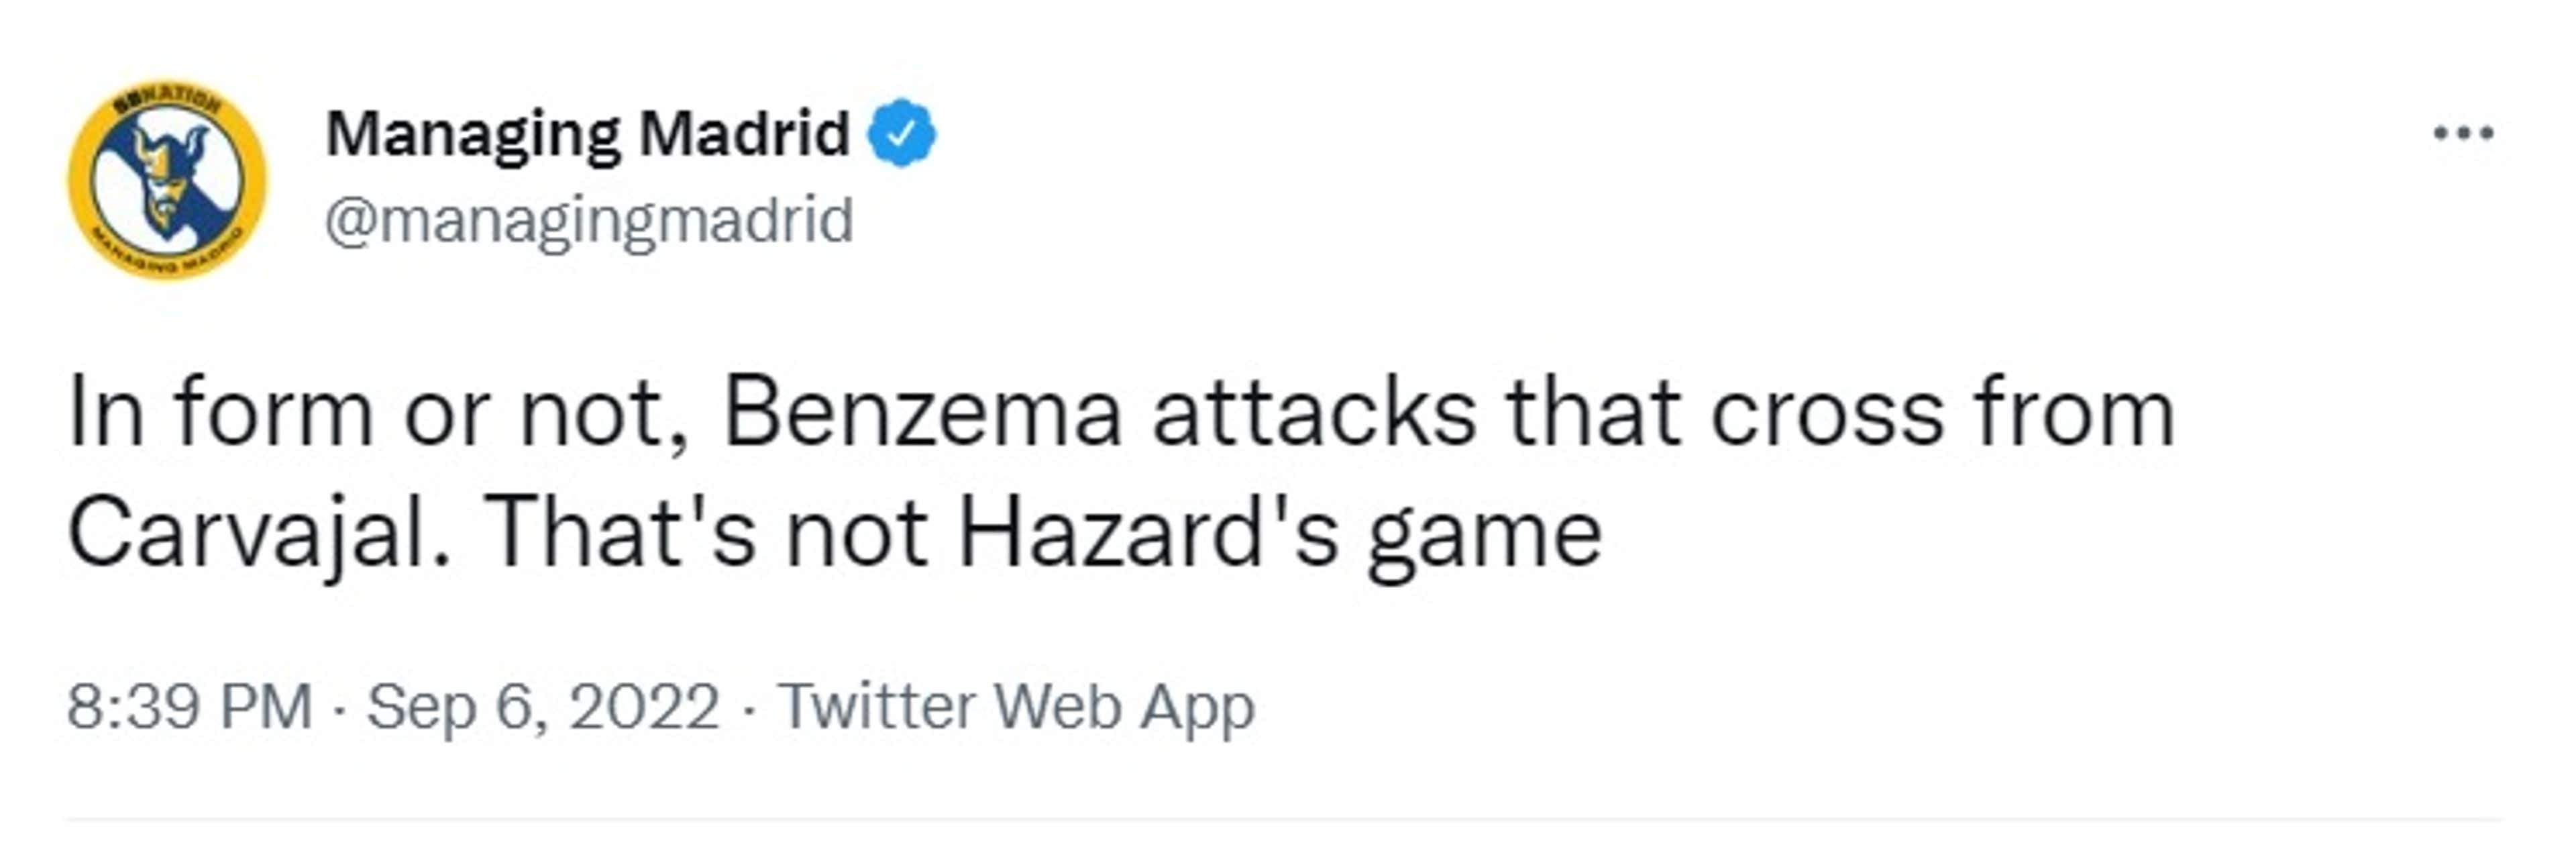 Benzema tweet 3